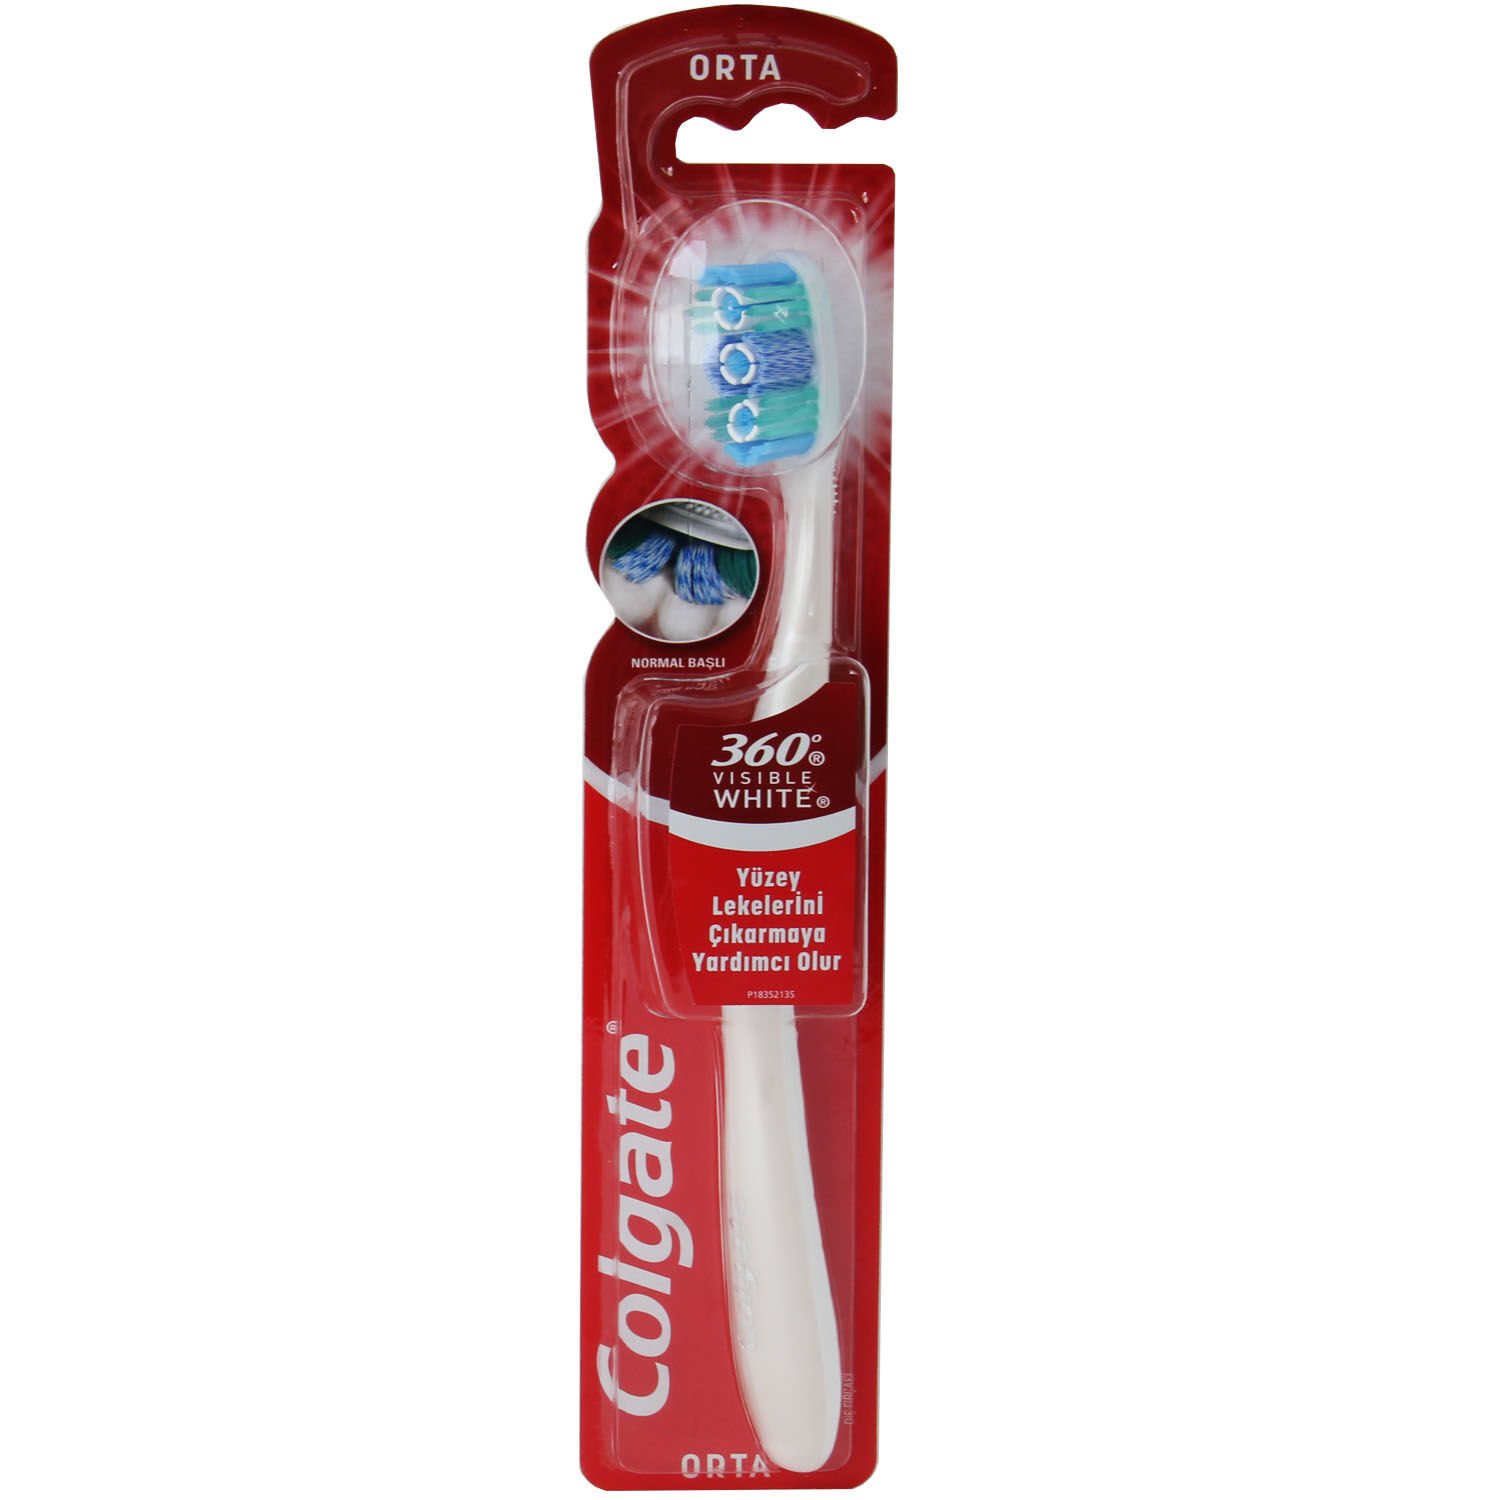 Colgate 360 Visible White Diş Fırçası Orta